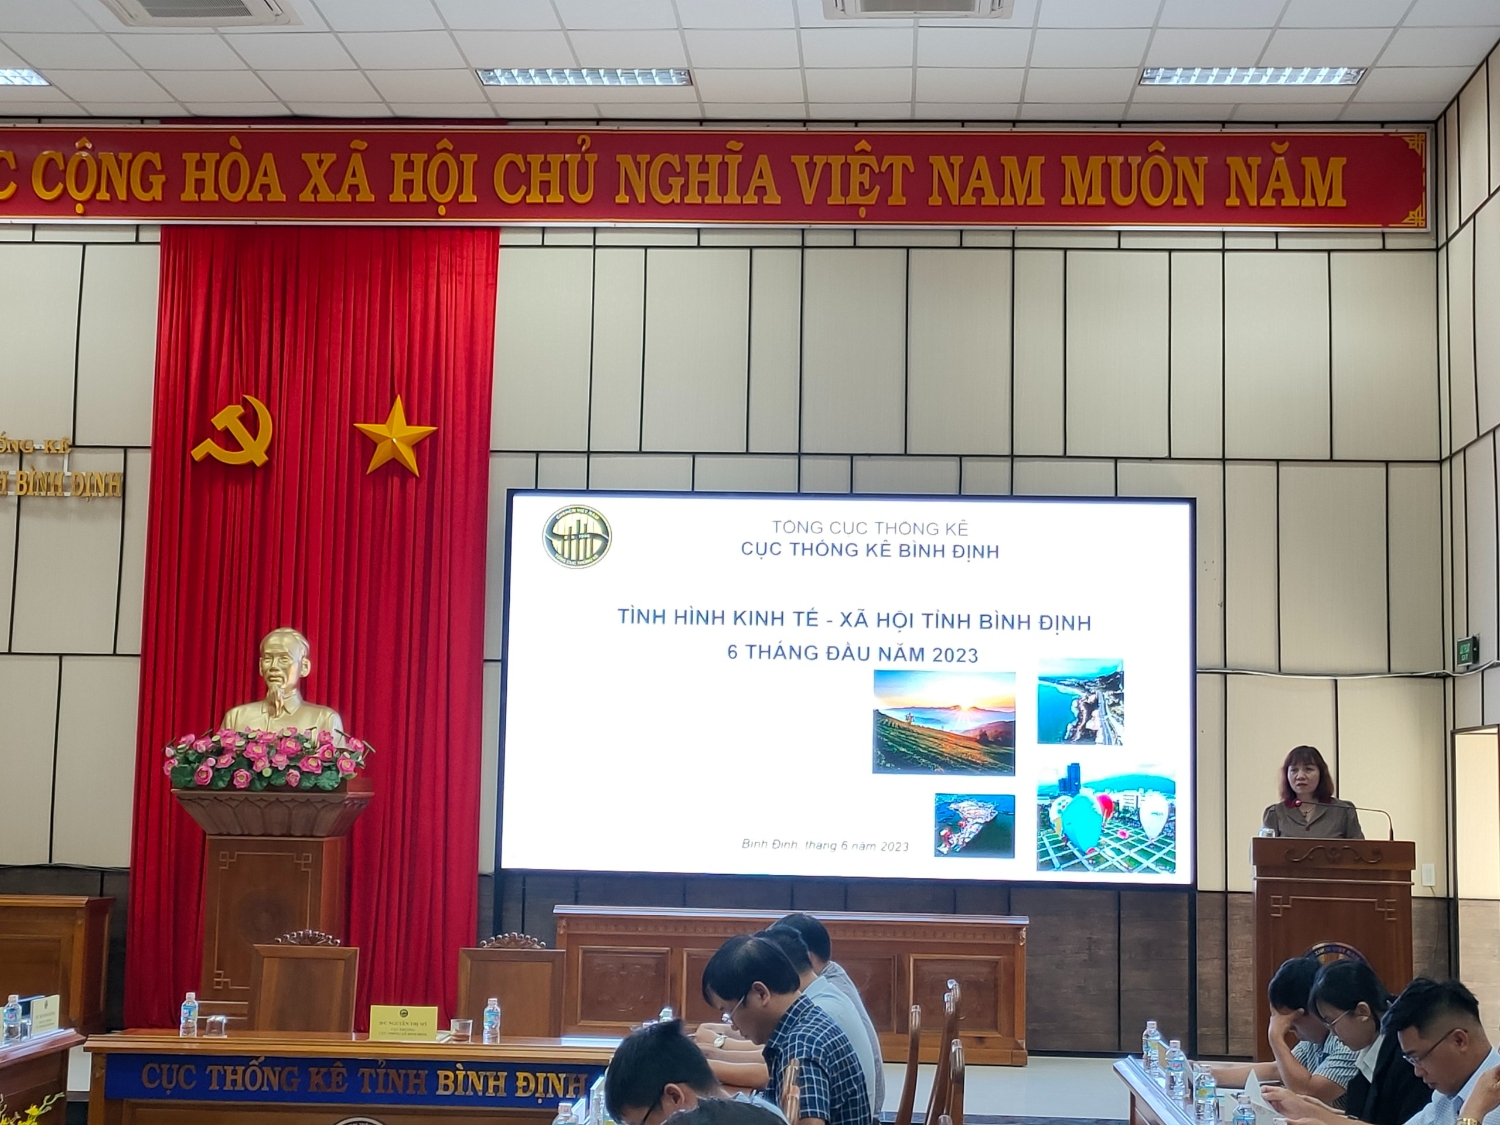 Tình hình kinh tế - xã hội tỉnh Bình Định - 6 tháng đầu năm 2023